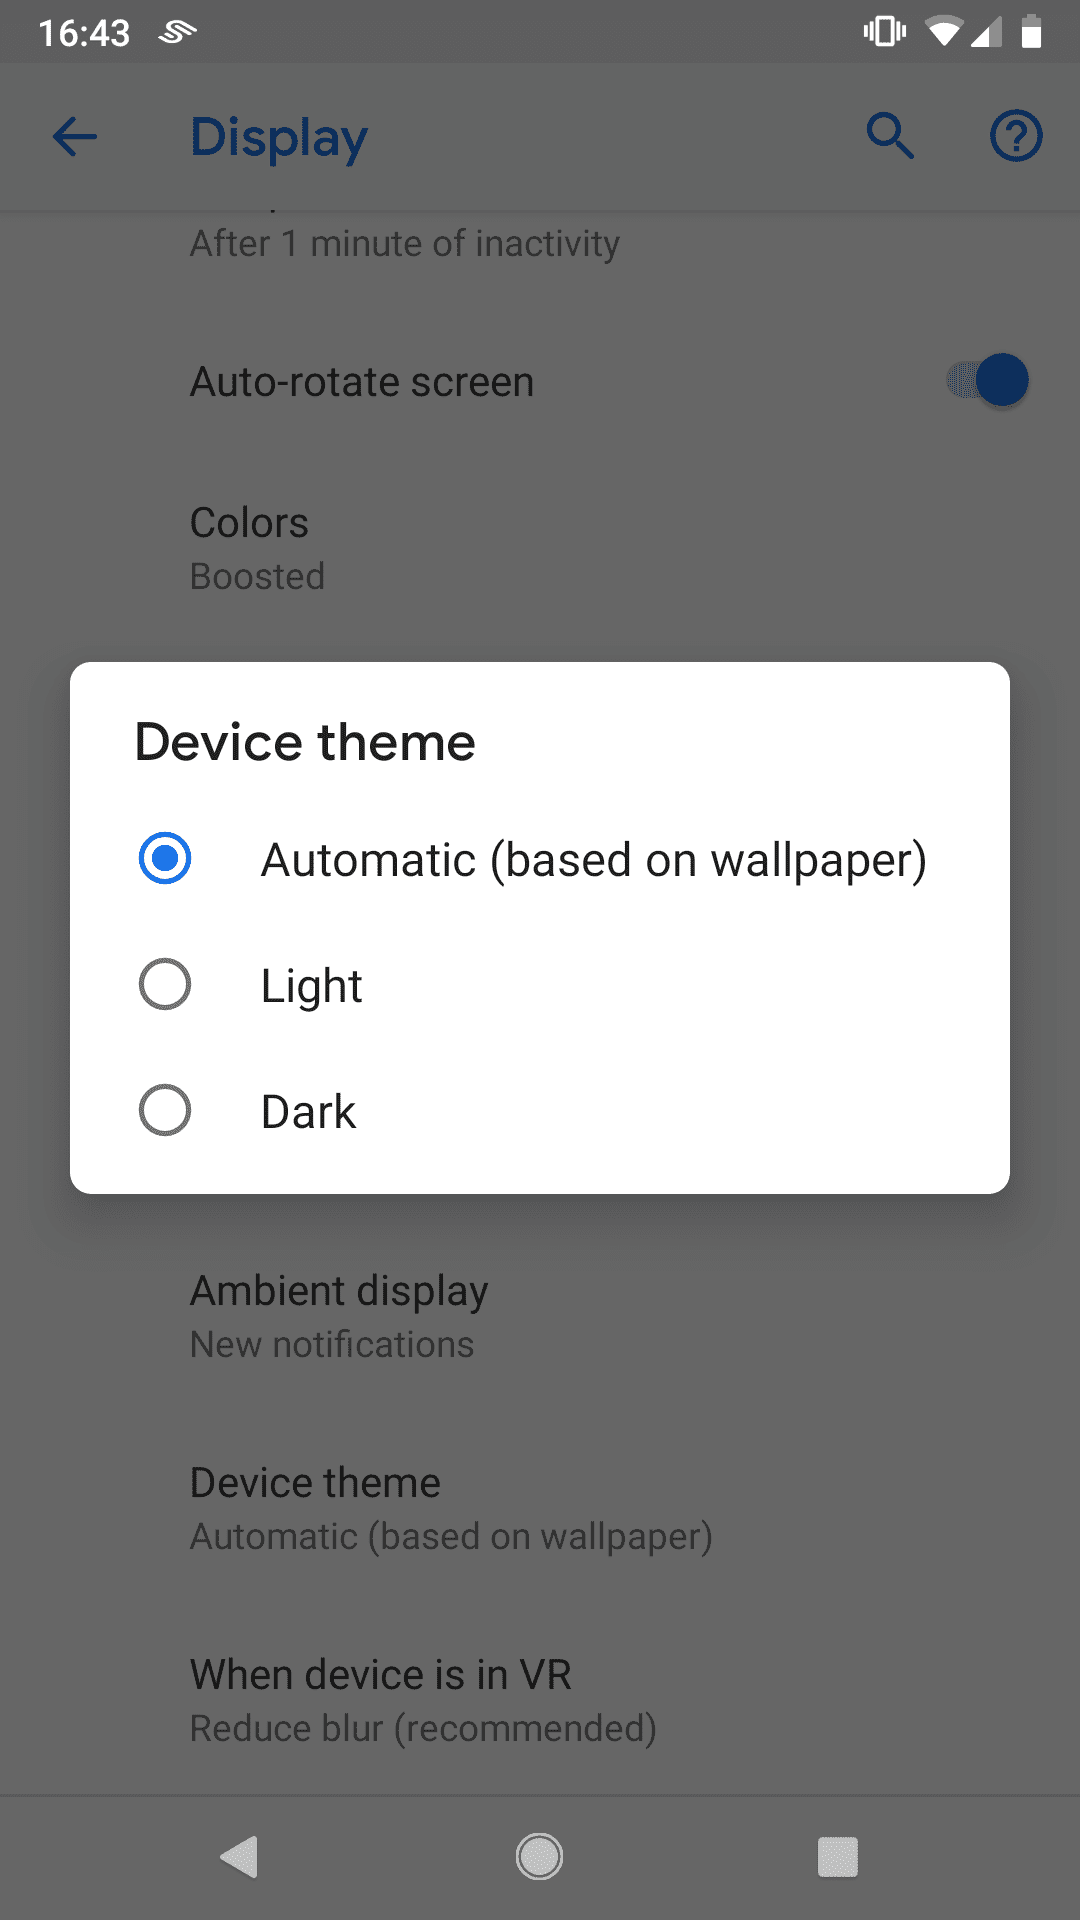 APP] Change wallpaper depending on device theme (light/dark mode